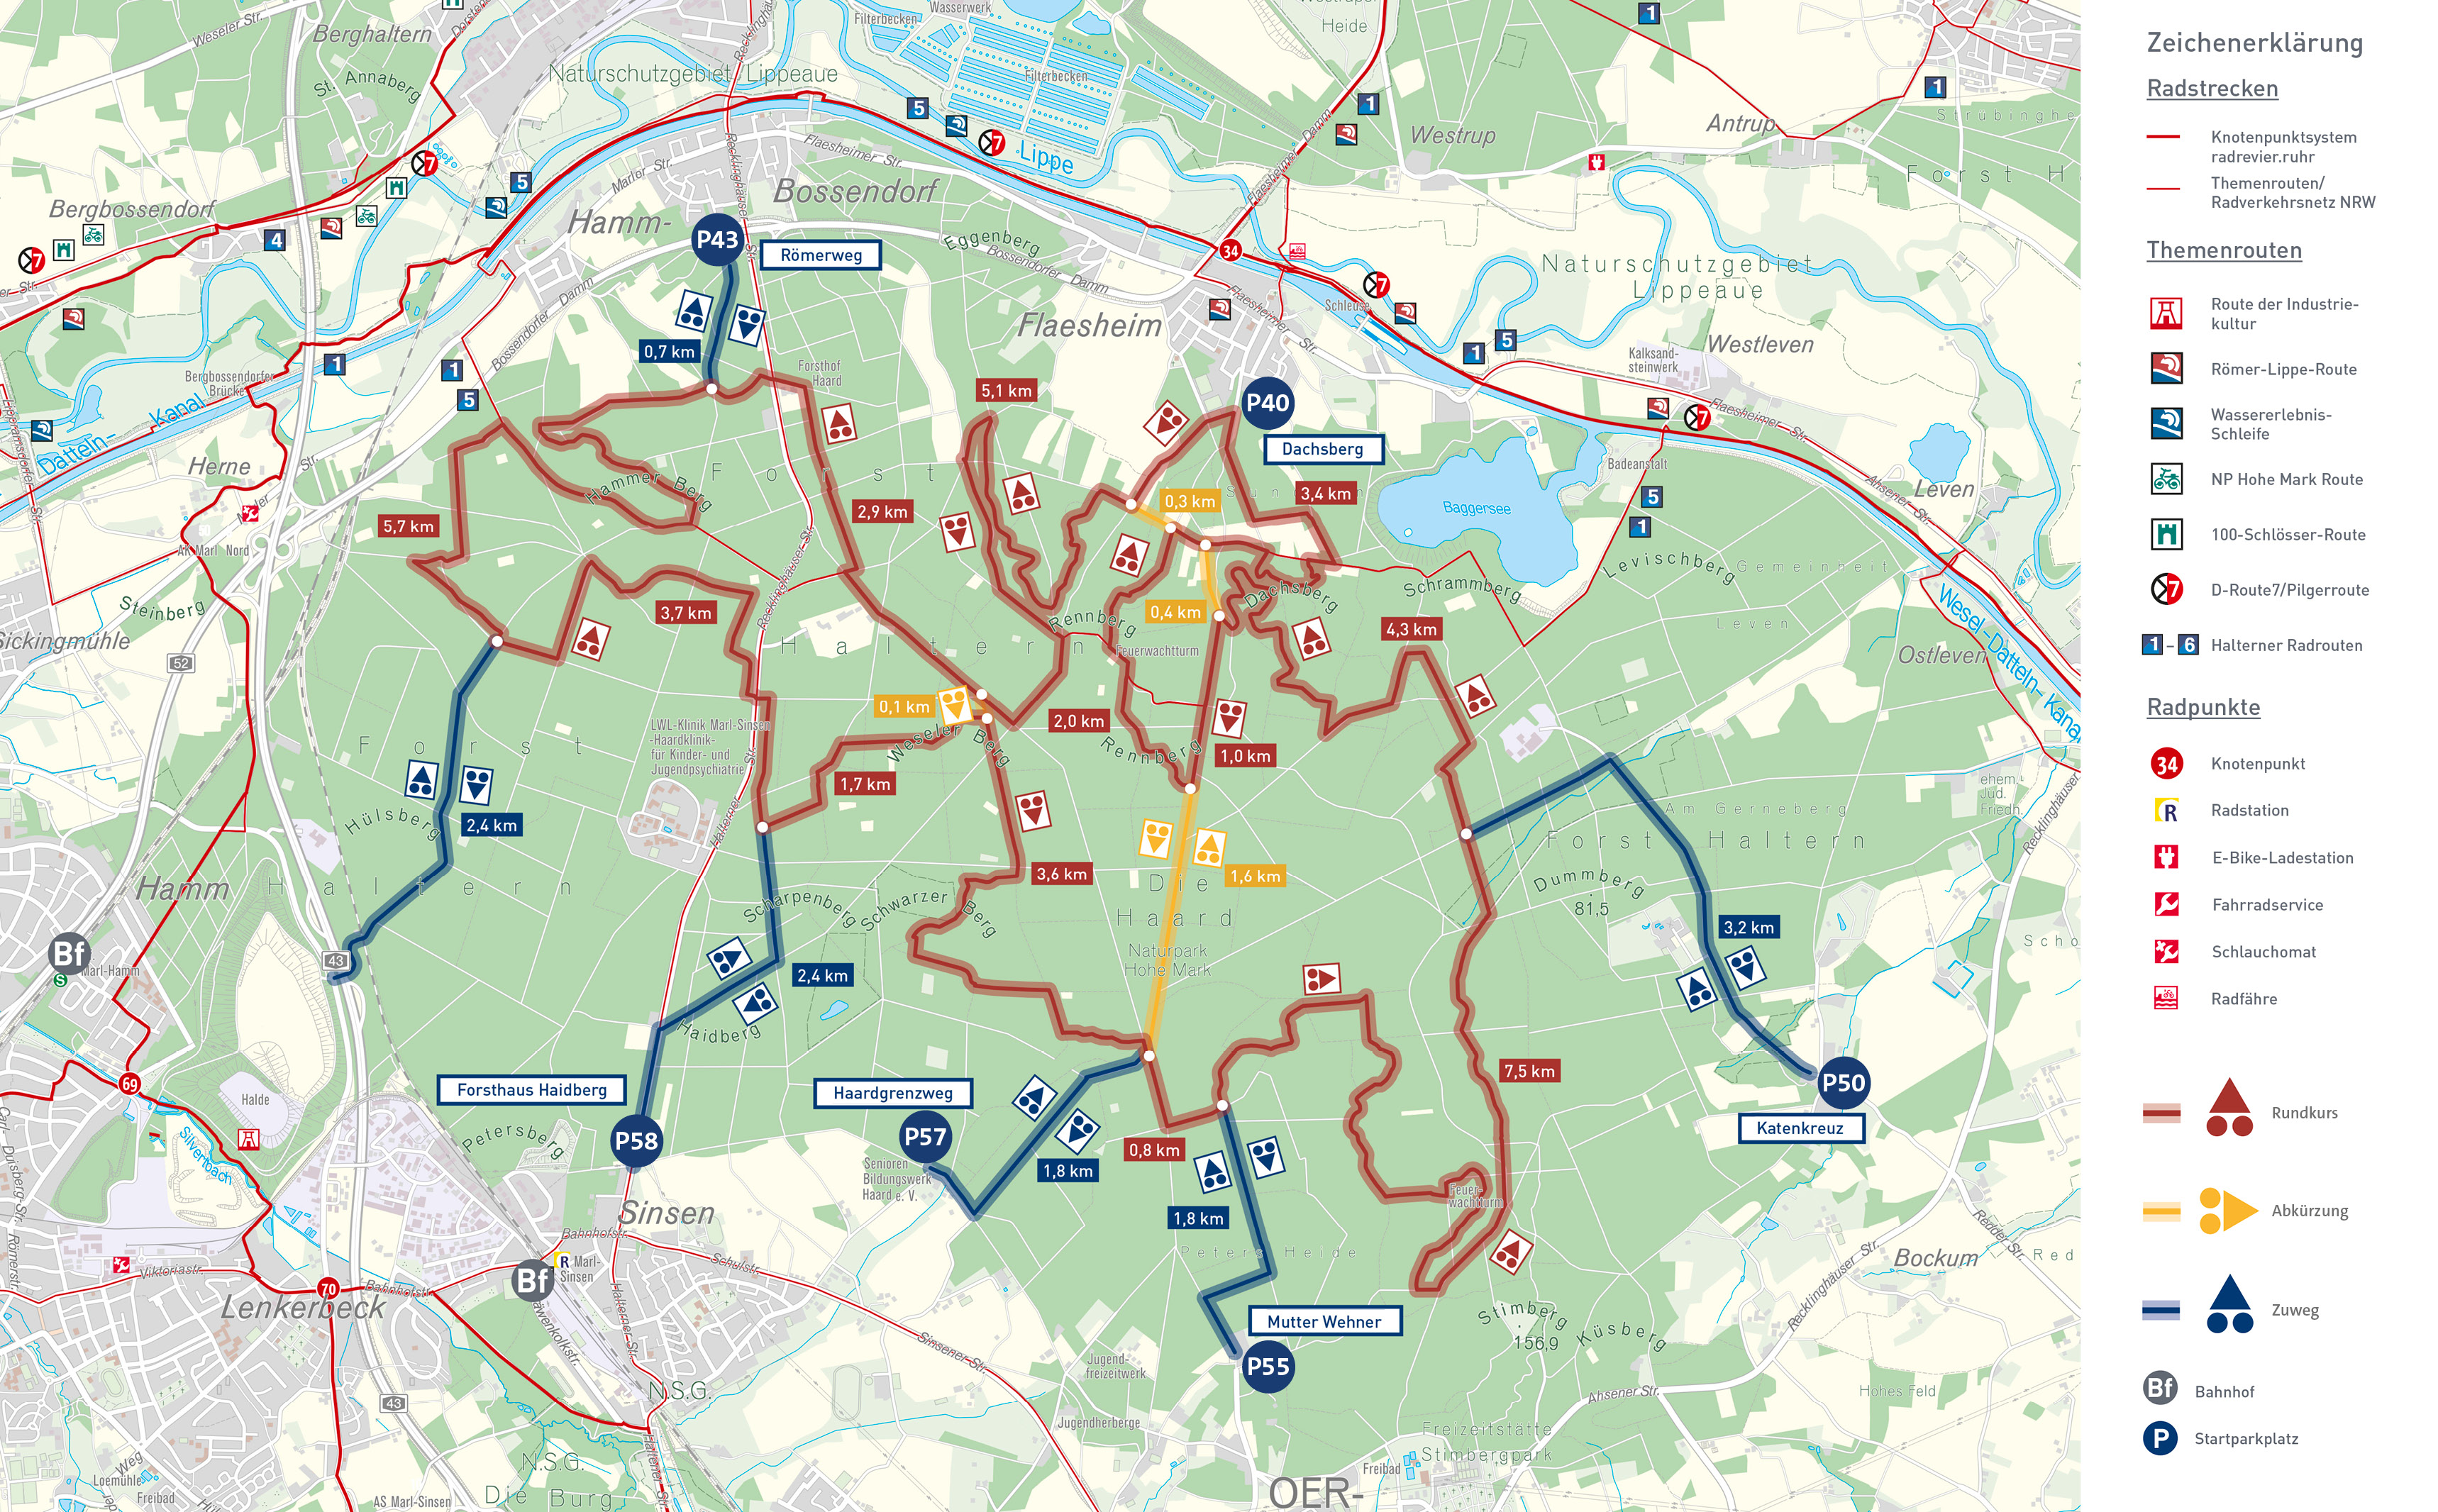 Karte: Anreise, Strecken und Wanderparkplätze zur MTB-Strecke Haard on Tour.